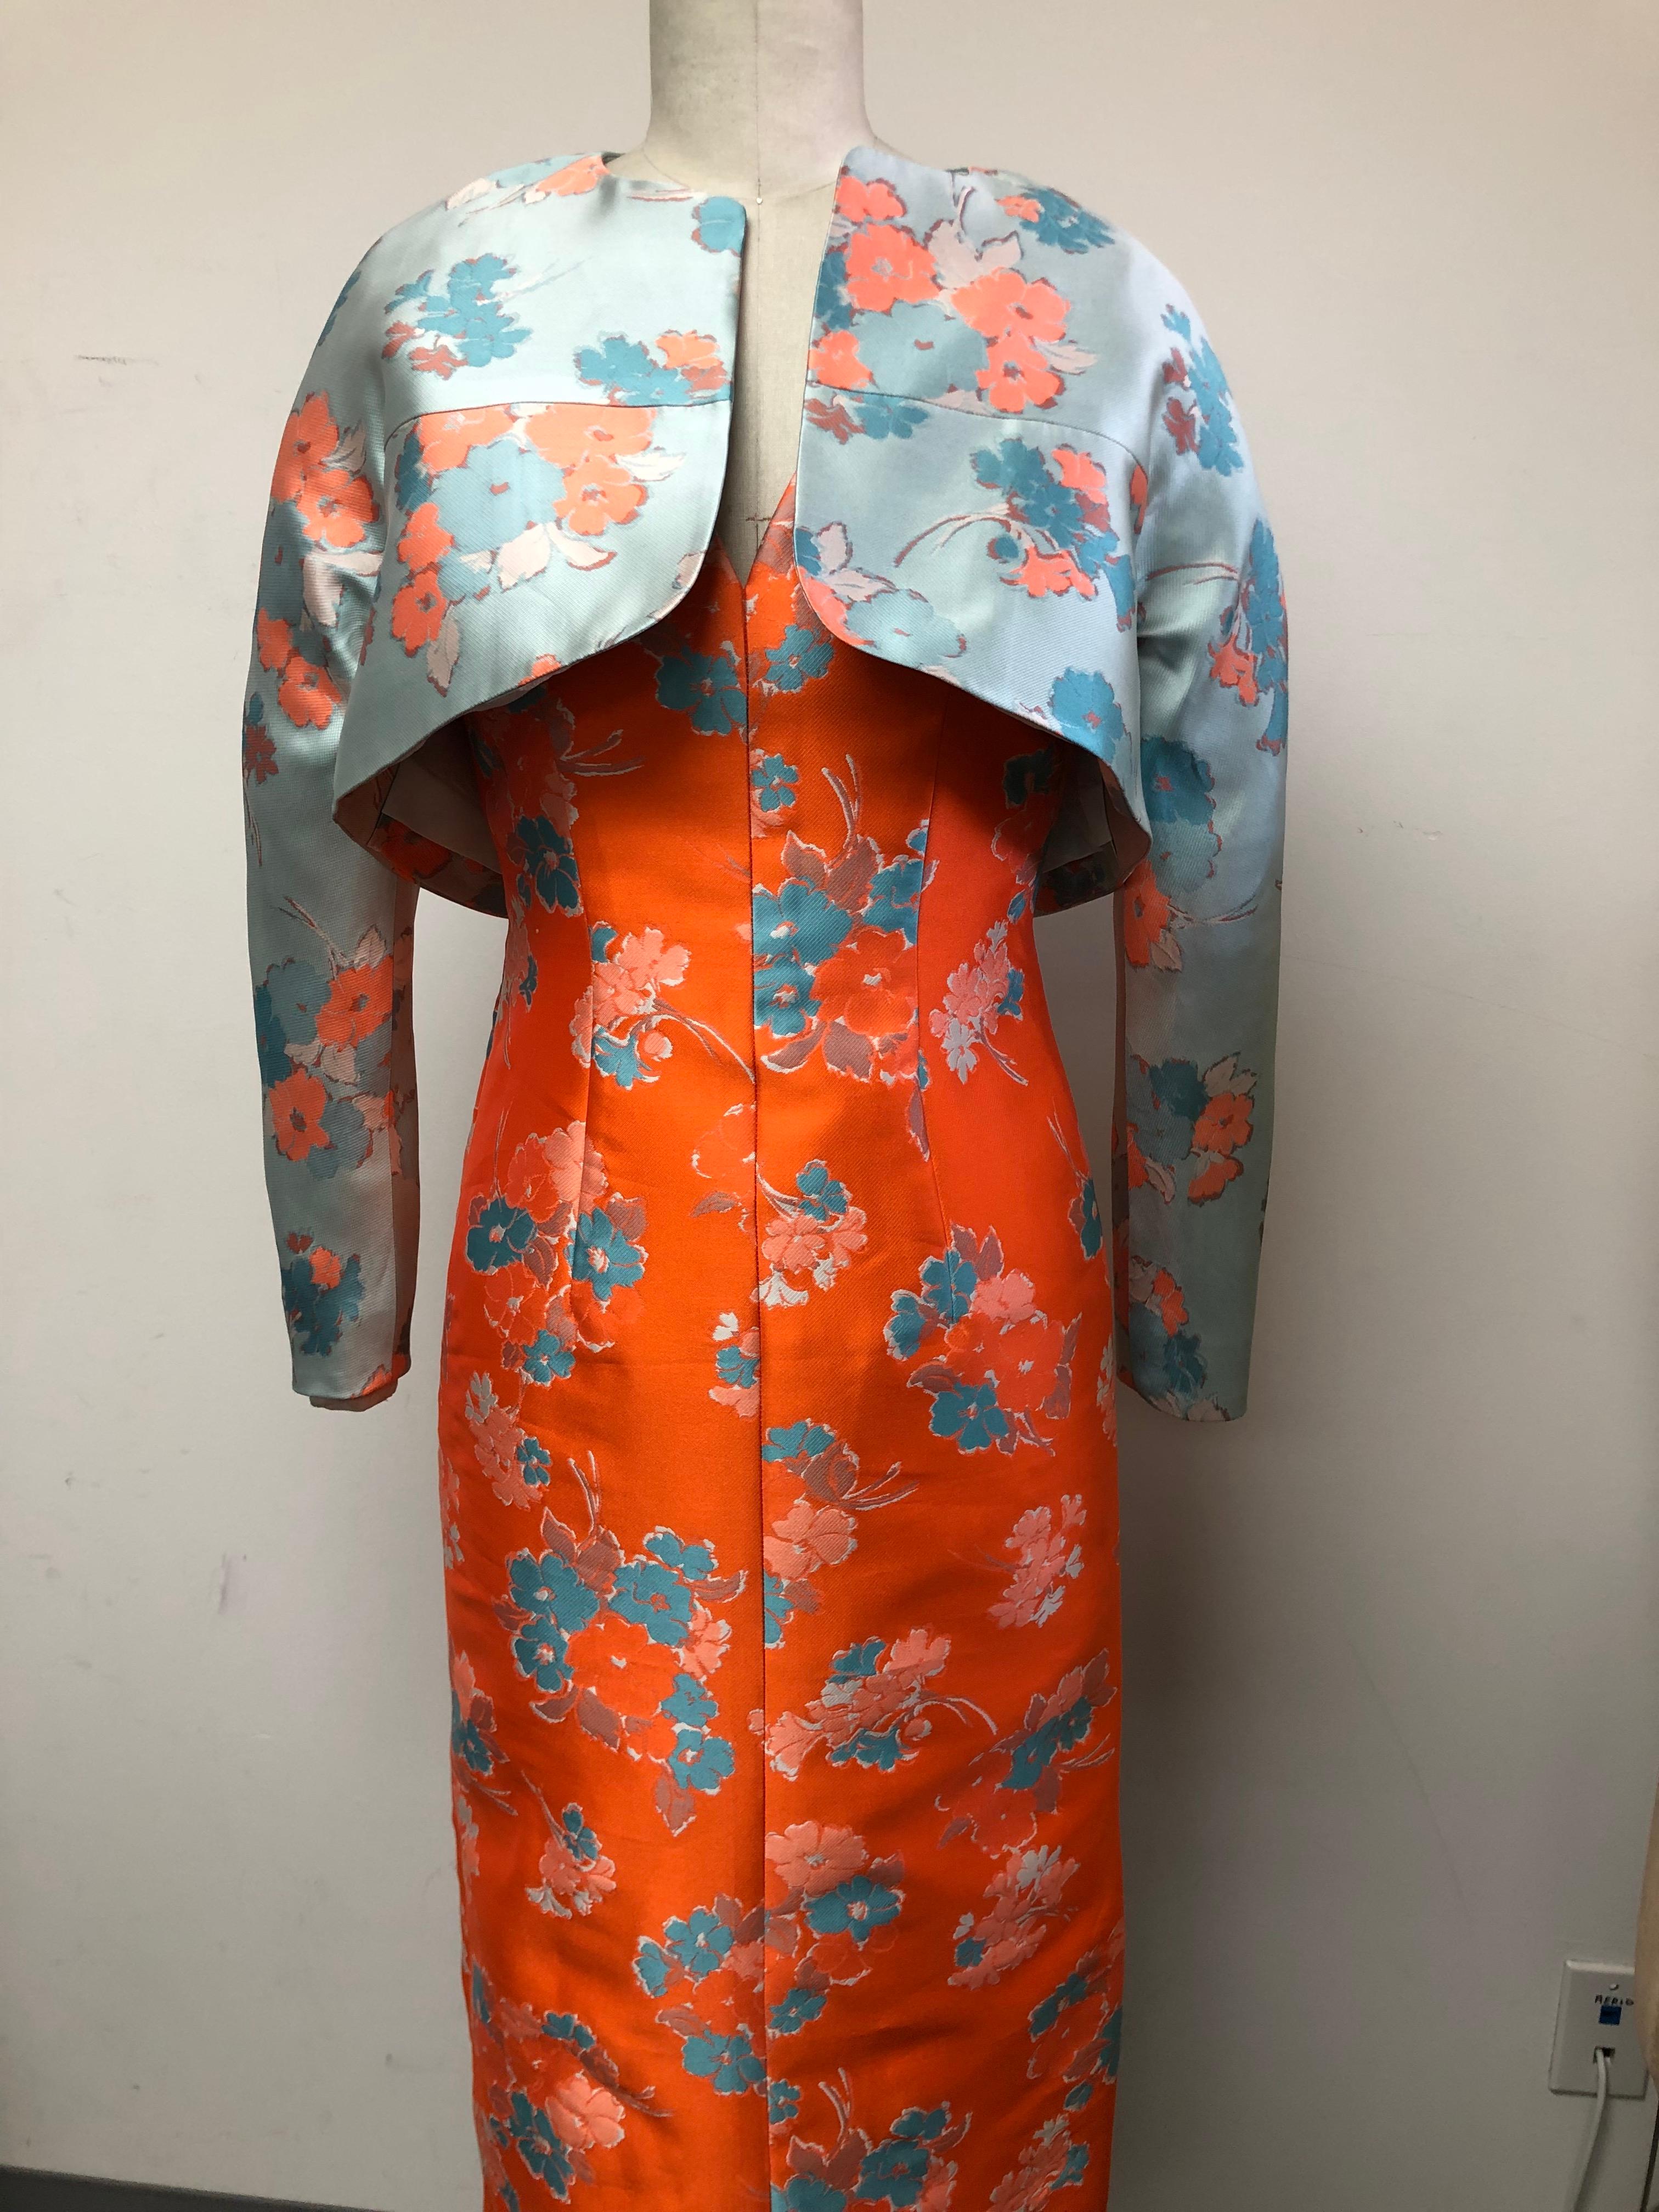 V Neck Slim Dress and Jacket in Delightful Orange and Blue Floral Print  For Sale 3